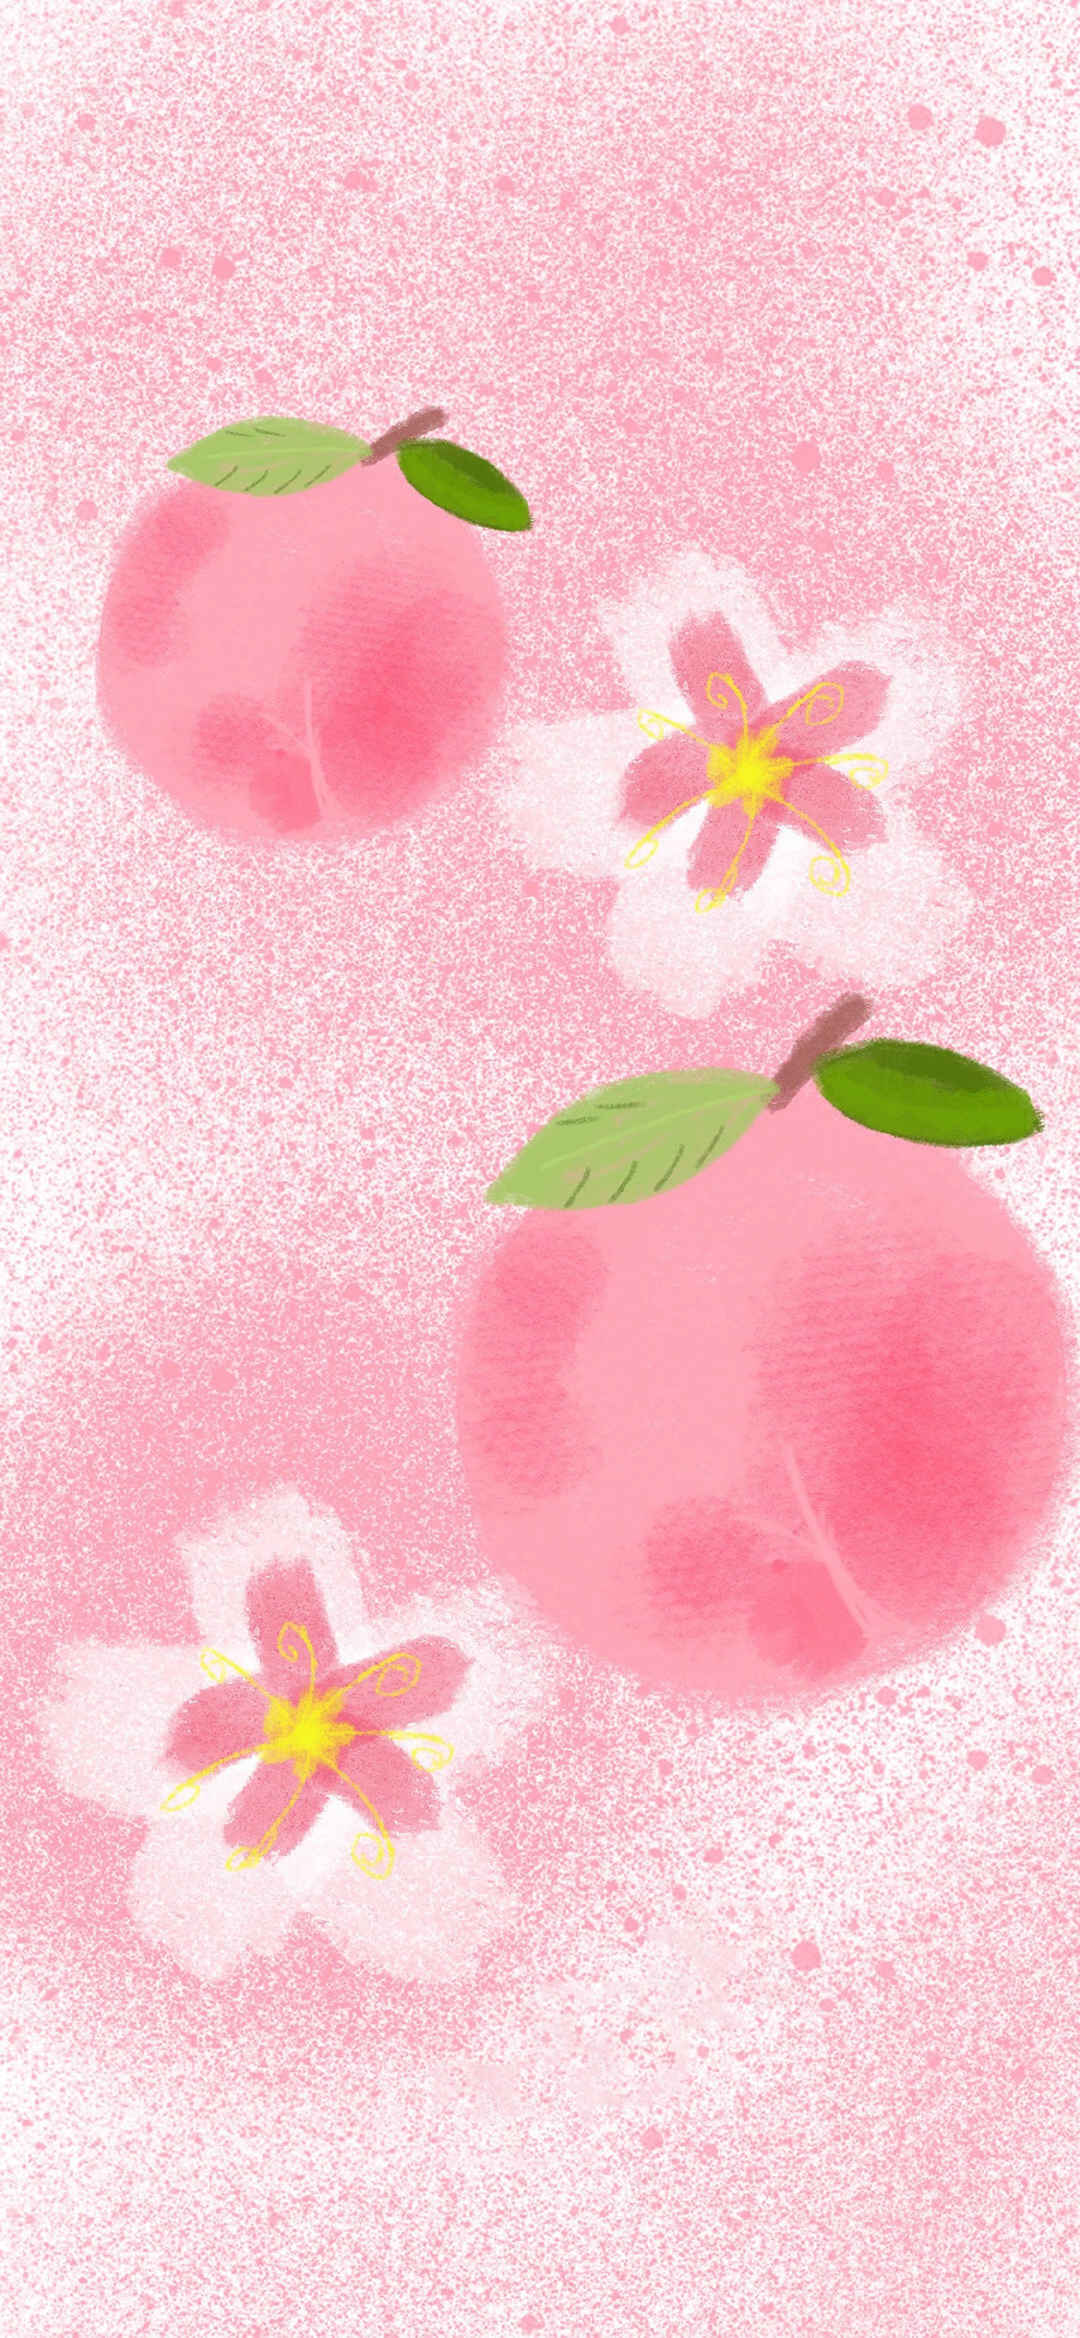 桃子分红绘画手机壁纸